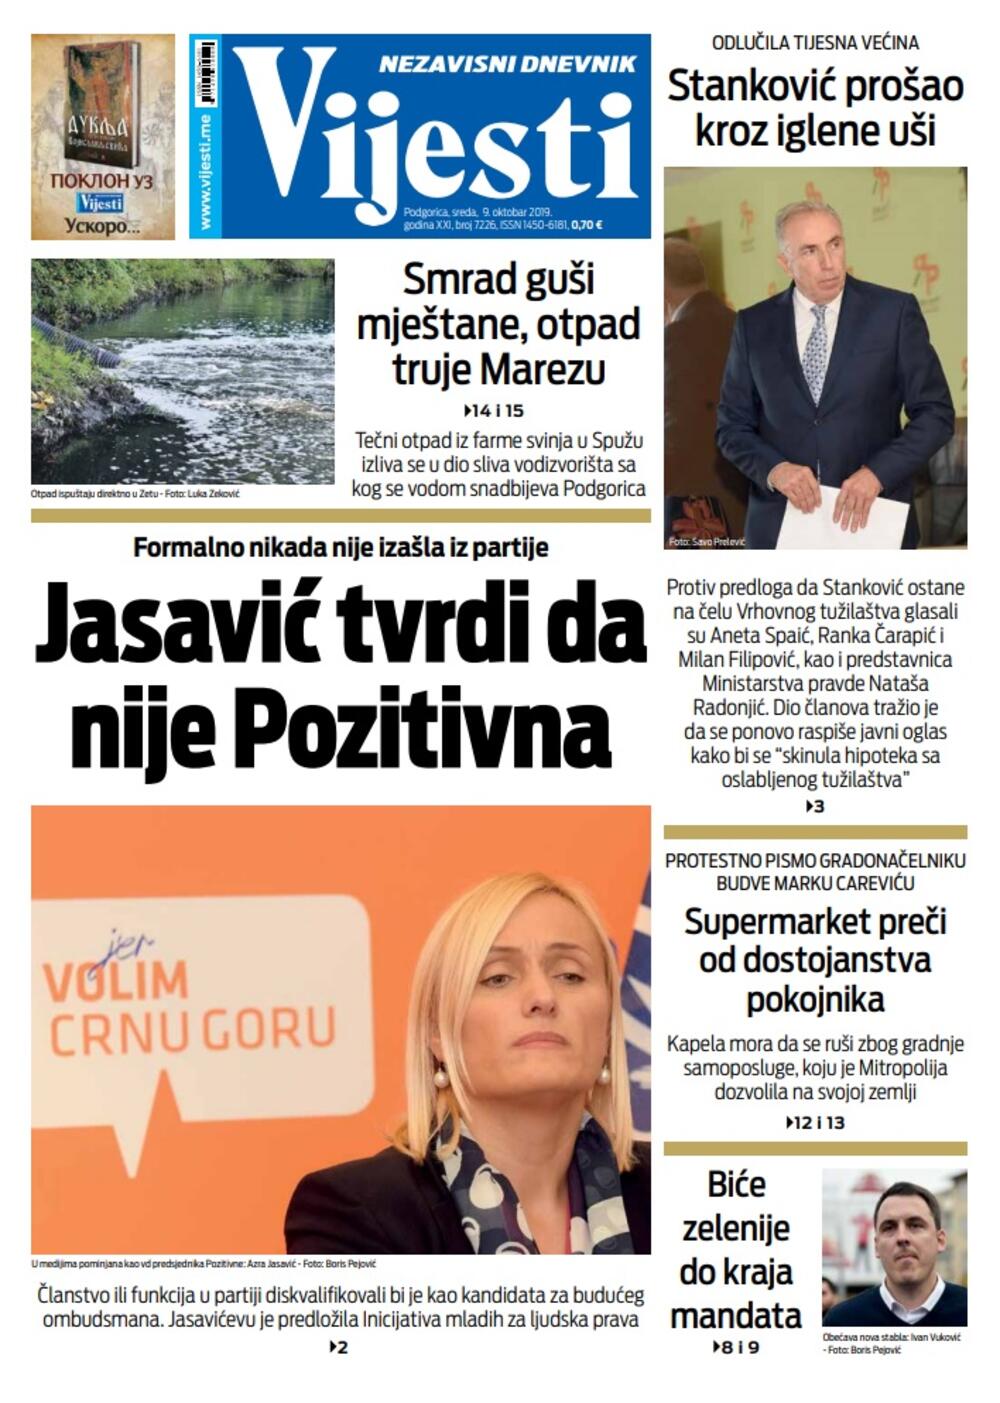 Naslovna strana "Vijesti" za 9. oktobar